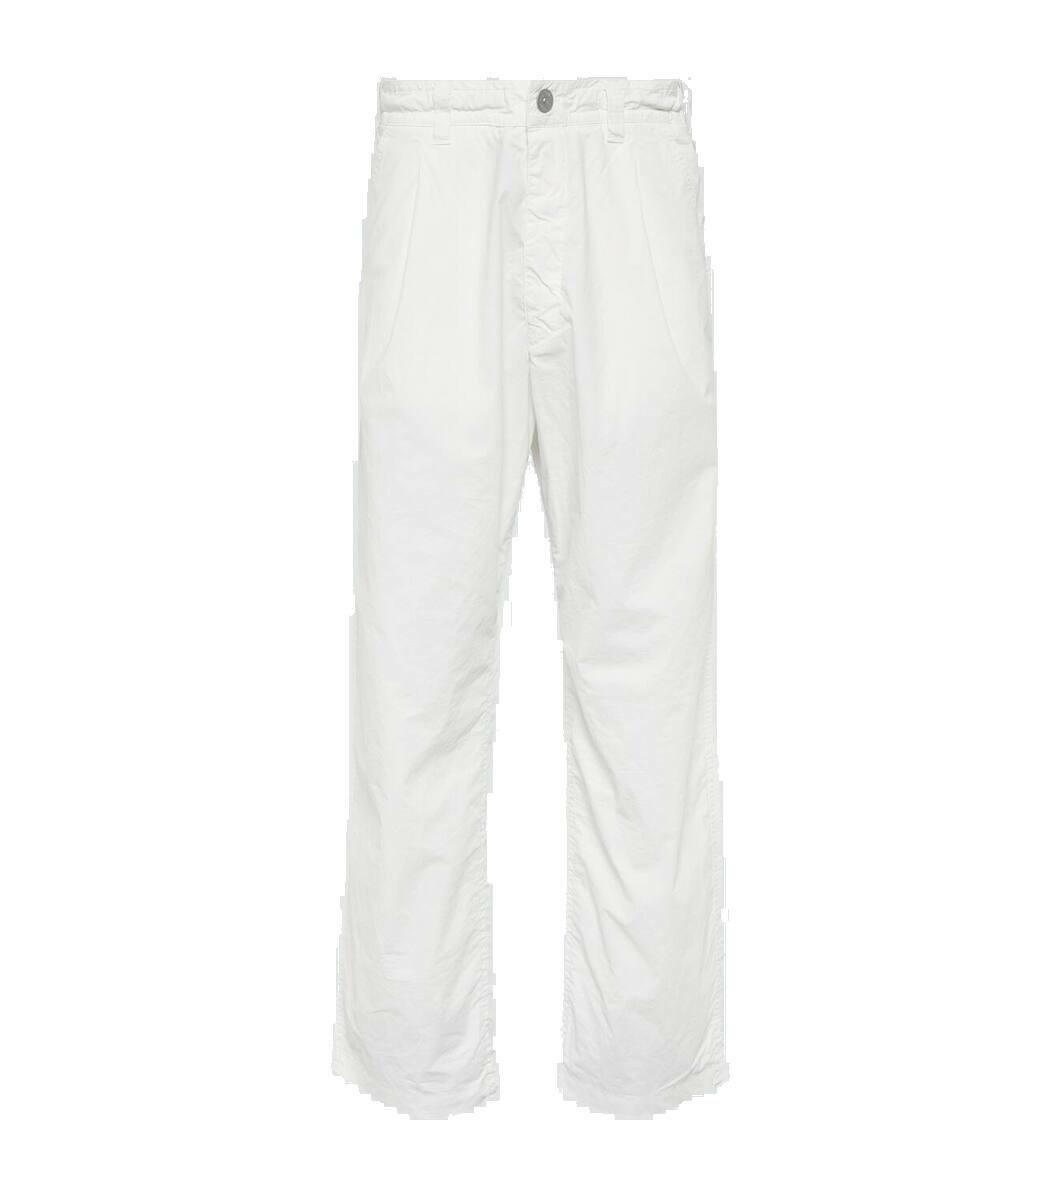 Marina cotton straight pants